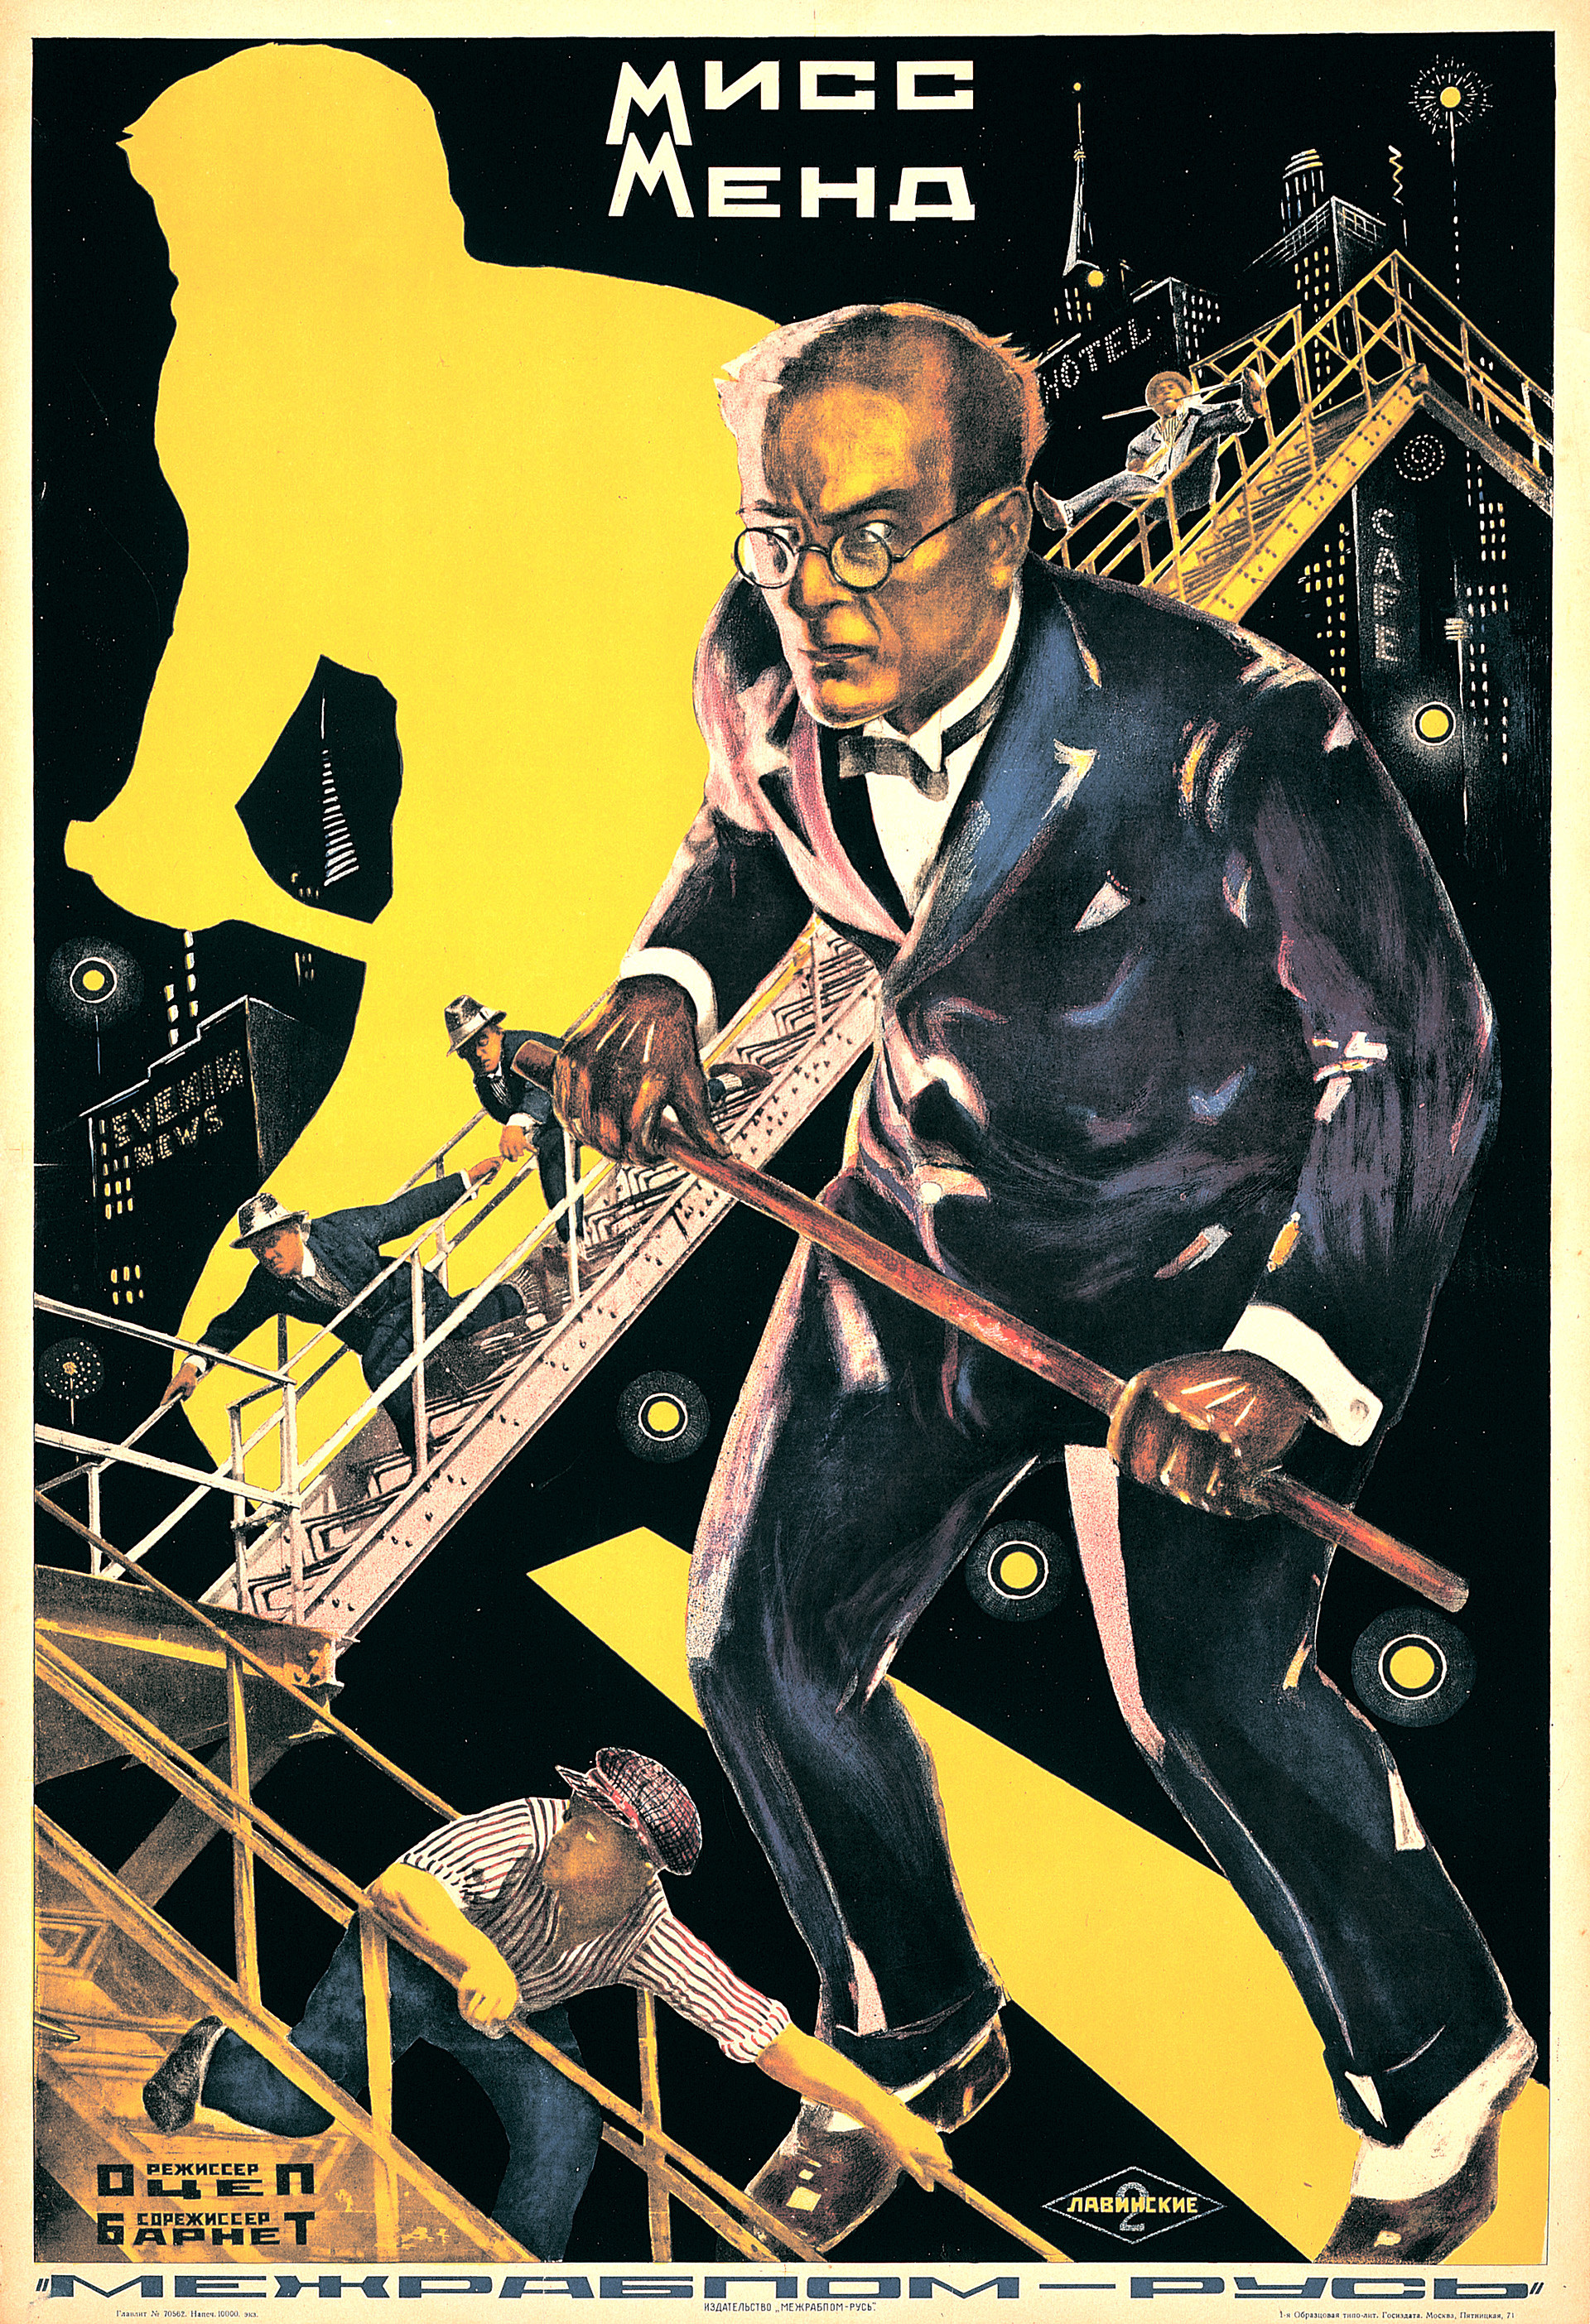 アントン・ラヴィンスキー、映画『ミス・メンド』（1927）のポスター